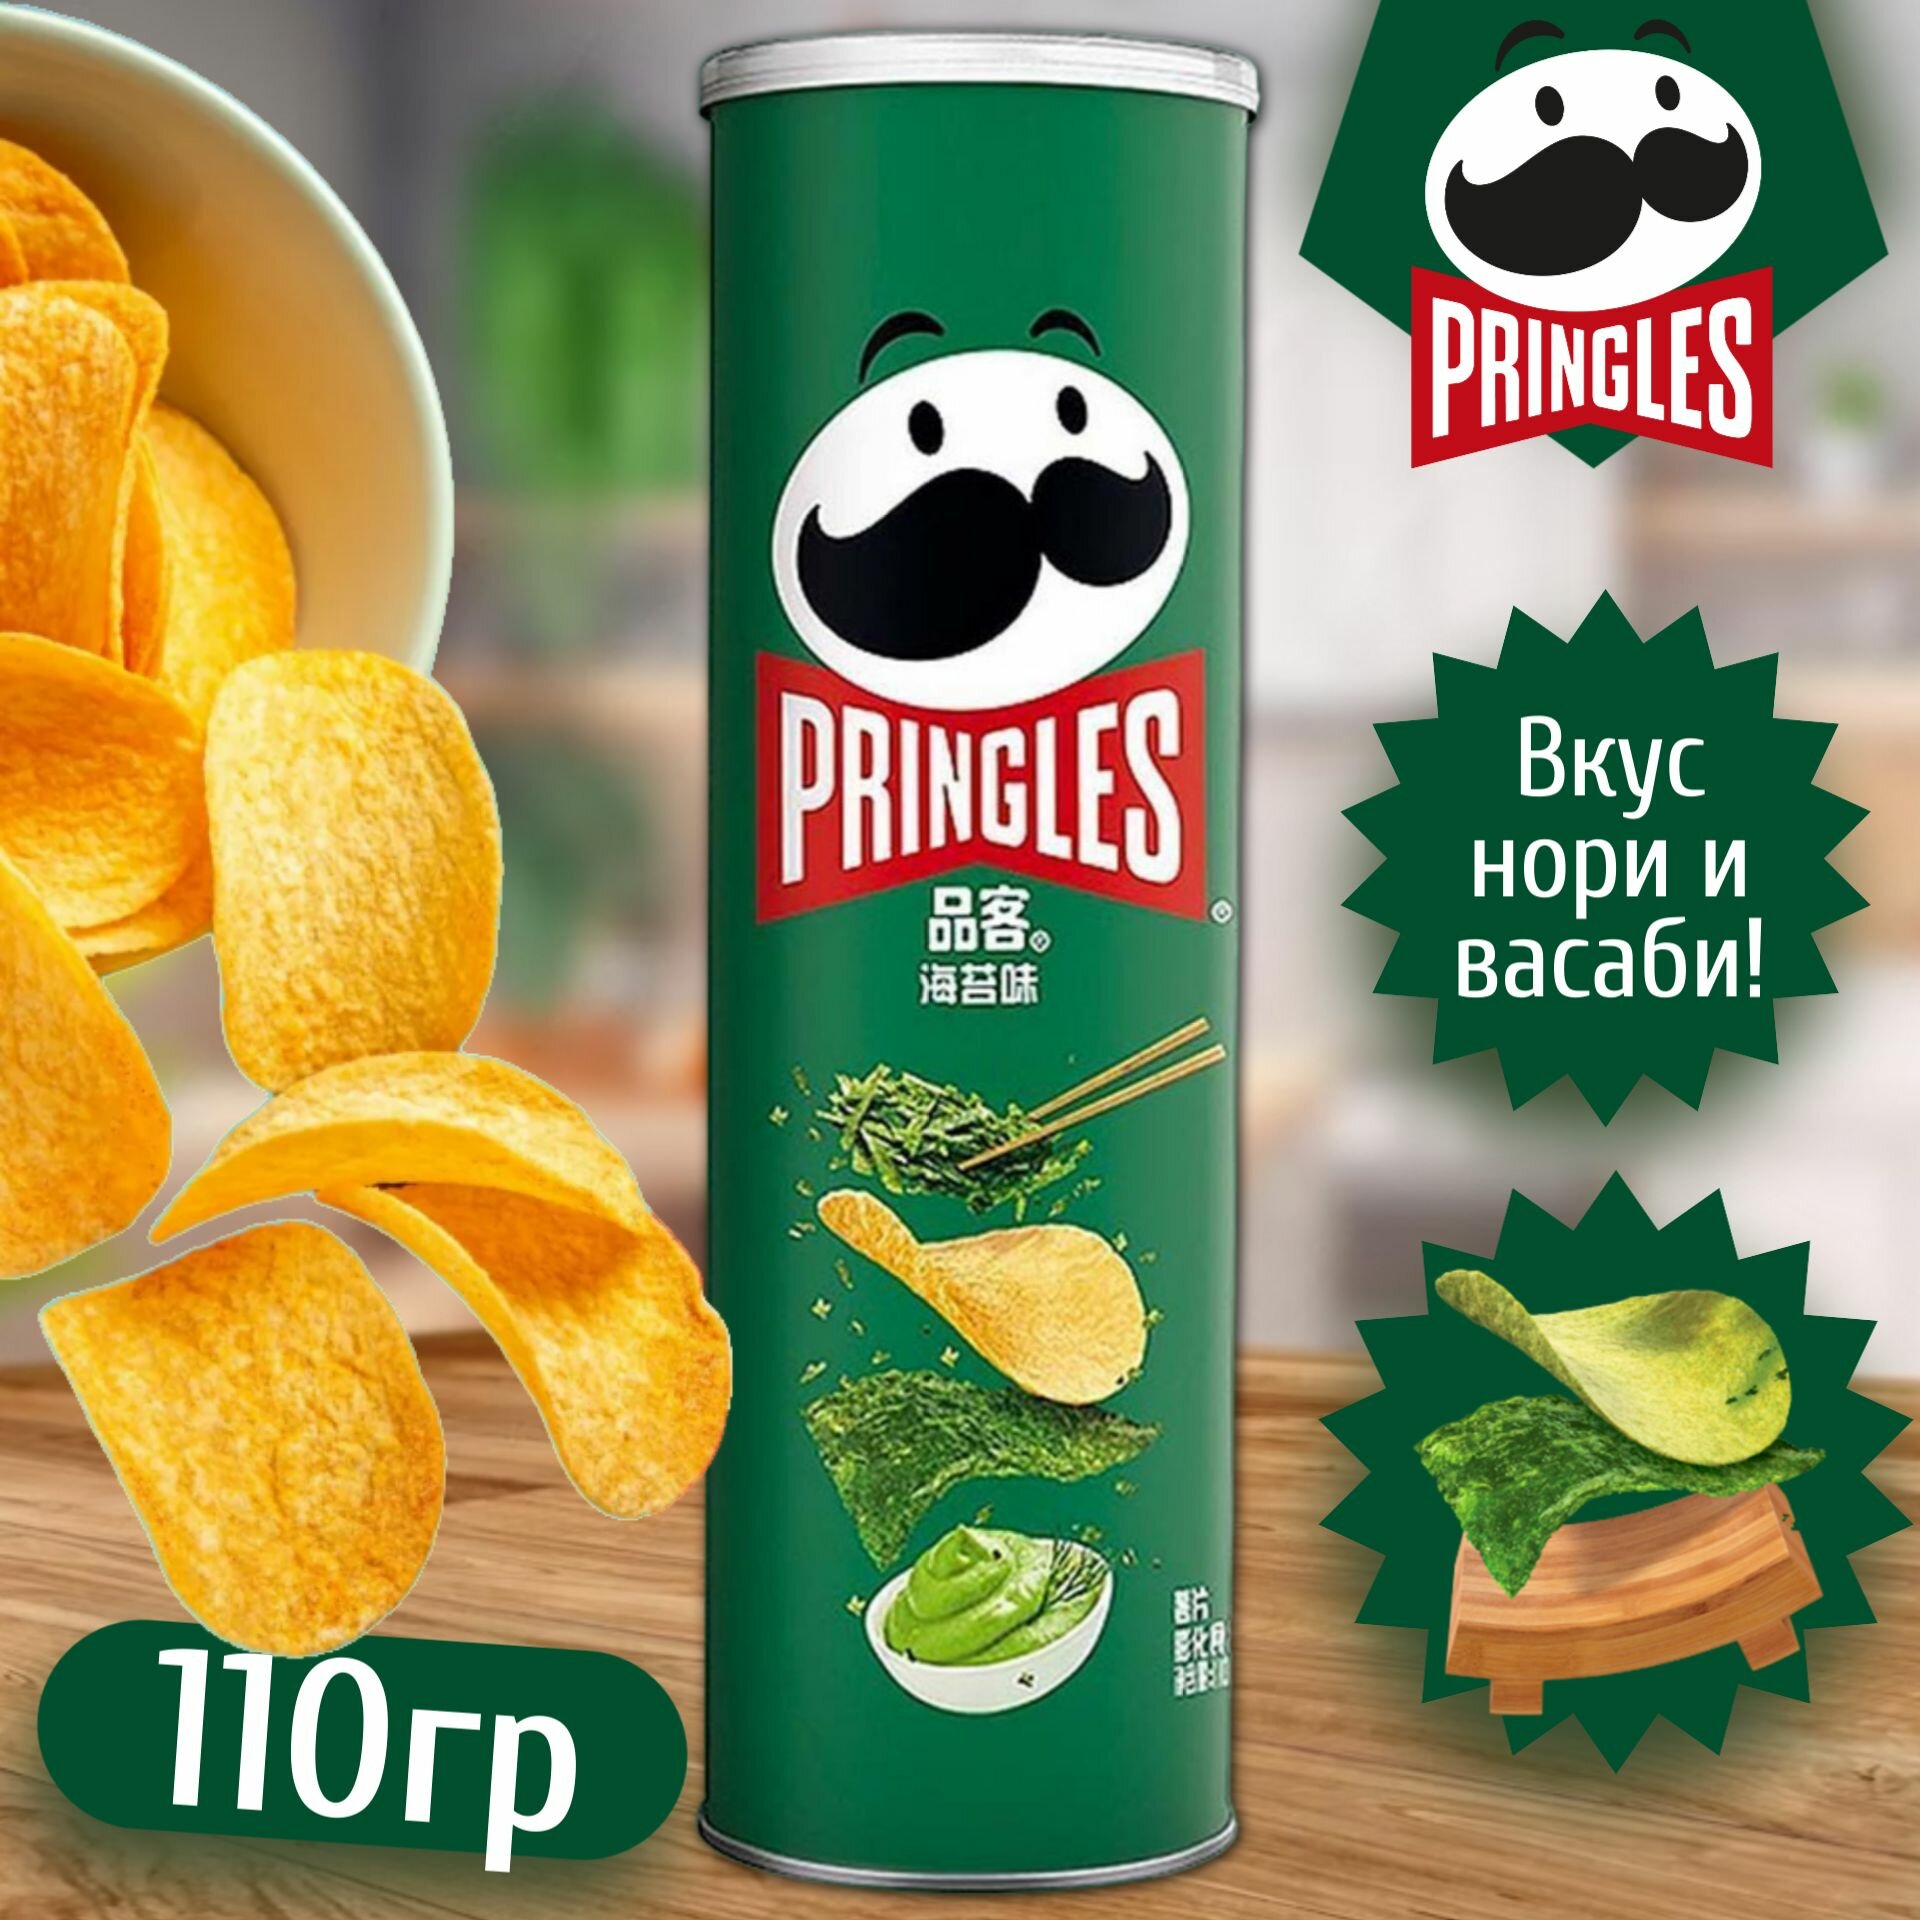 Картофельные чипсы Pringles Seaweed со вкусом Нори, 110 гр (Китай)